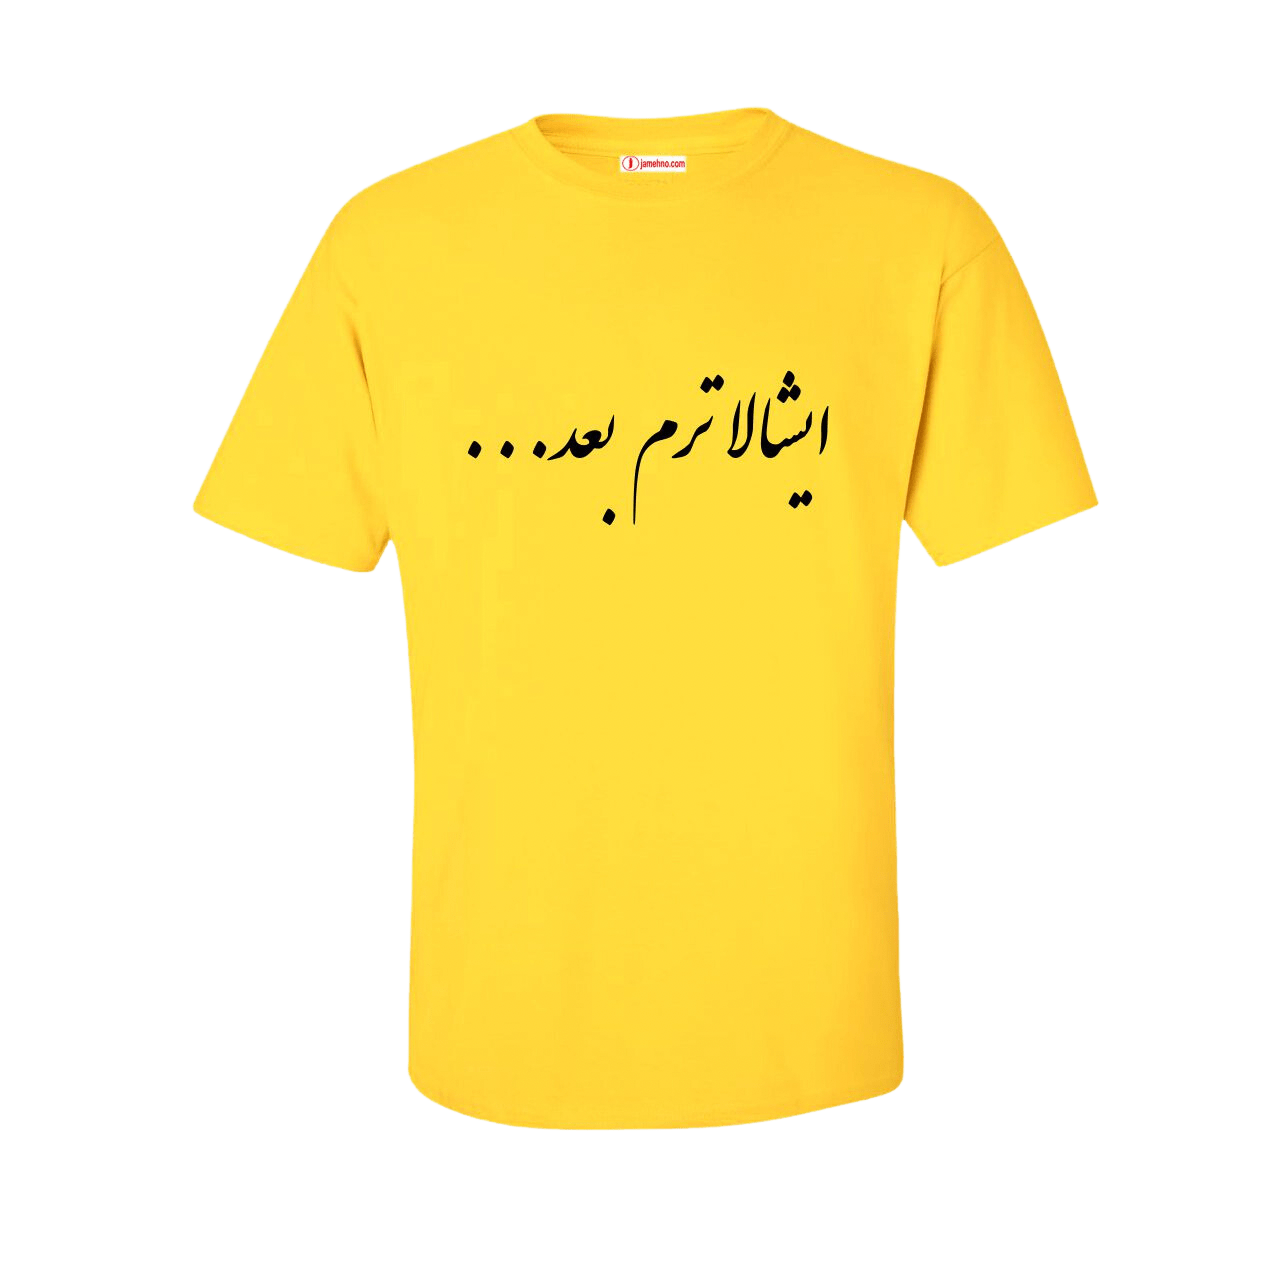 چاپ نوشته فارسی روی تیشرت